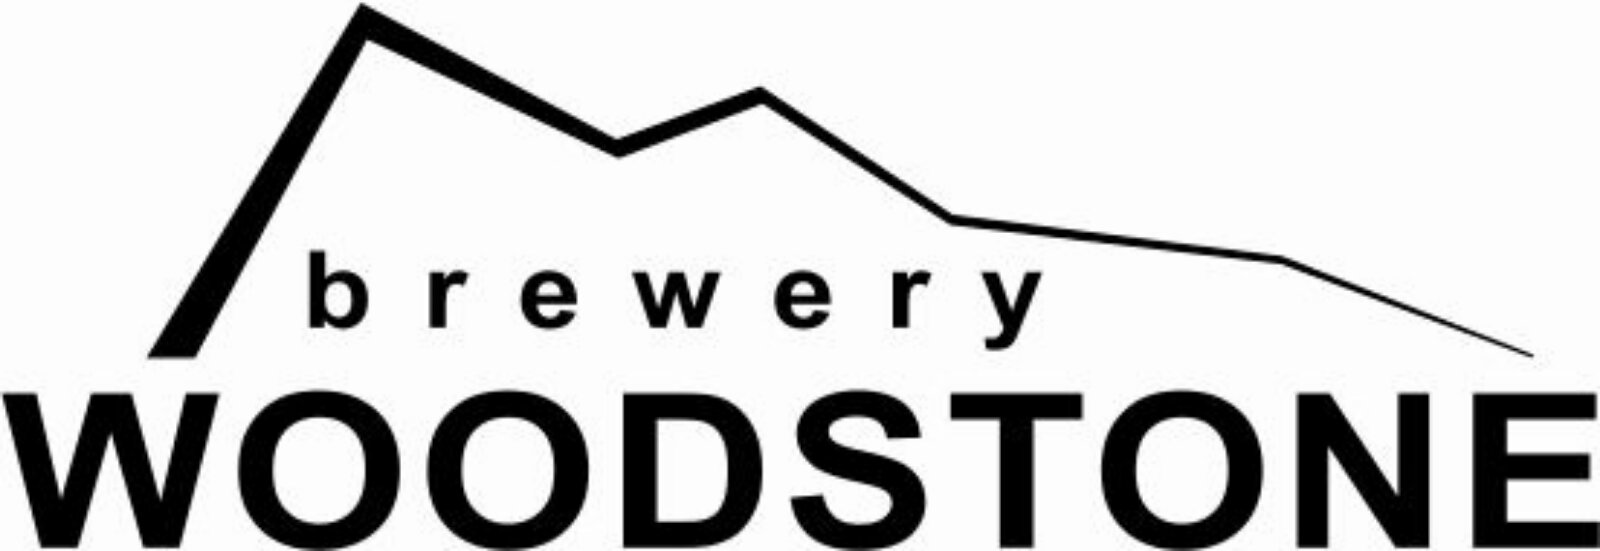 WoodStone brewery